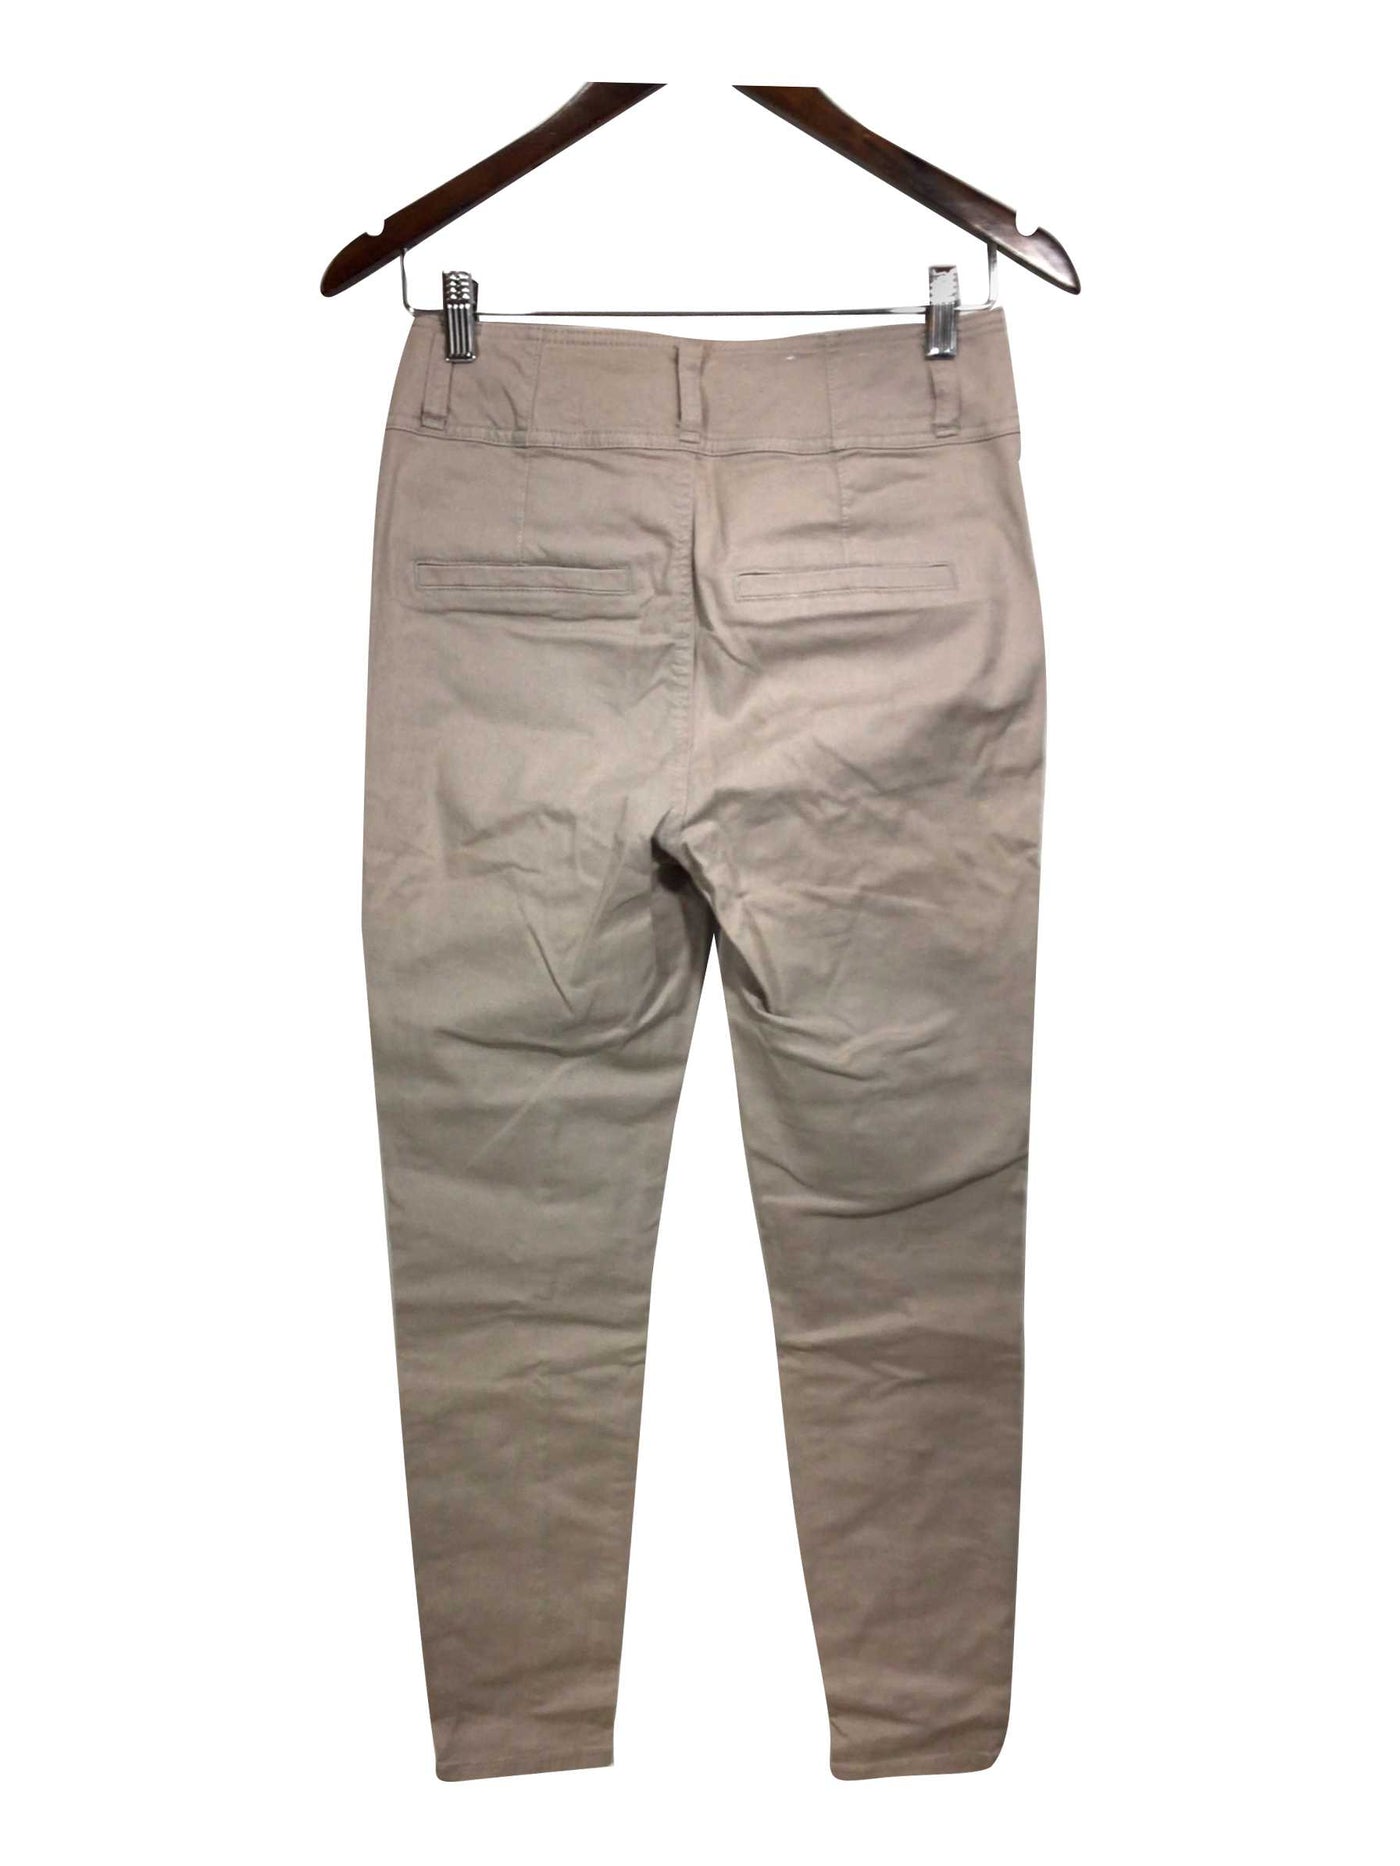 DYNAMITE Regular fit Straight-legged Jeans in Beige - Size 27 | 13.45 $ KOOP